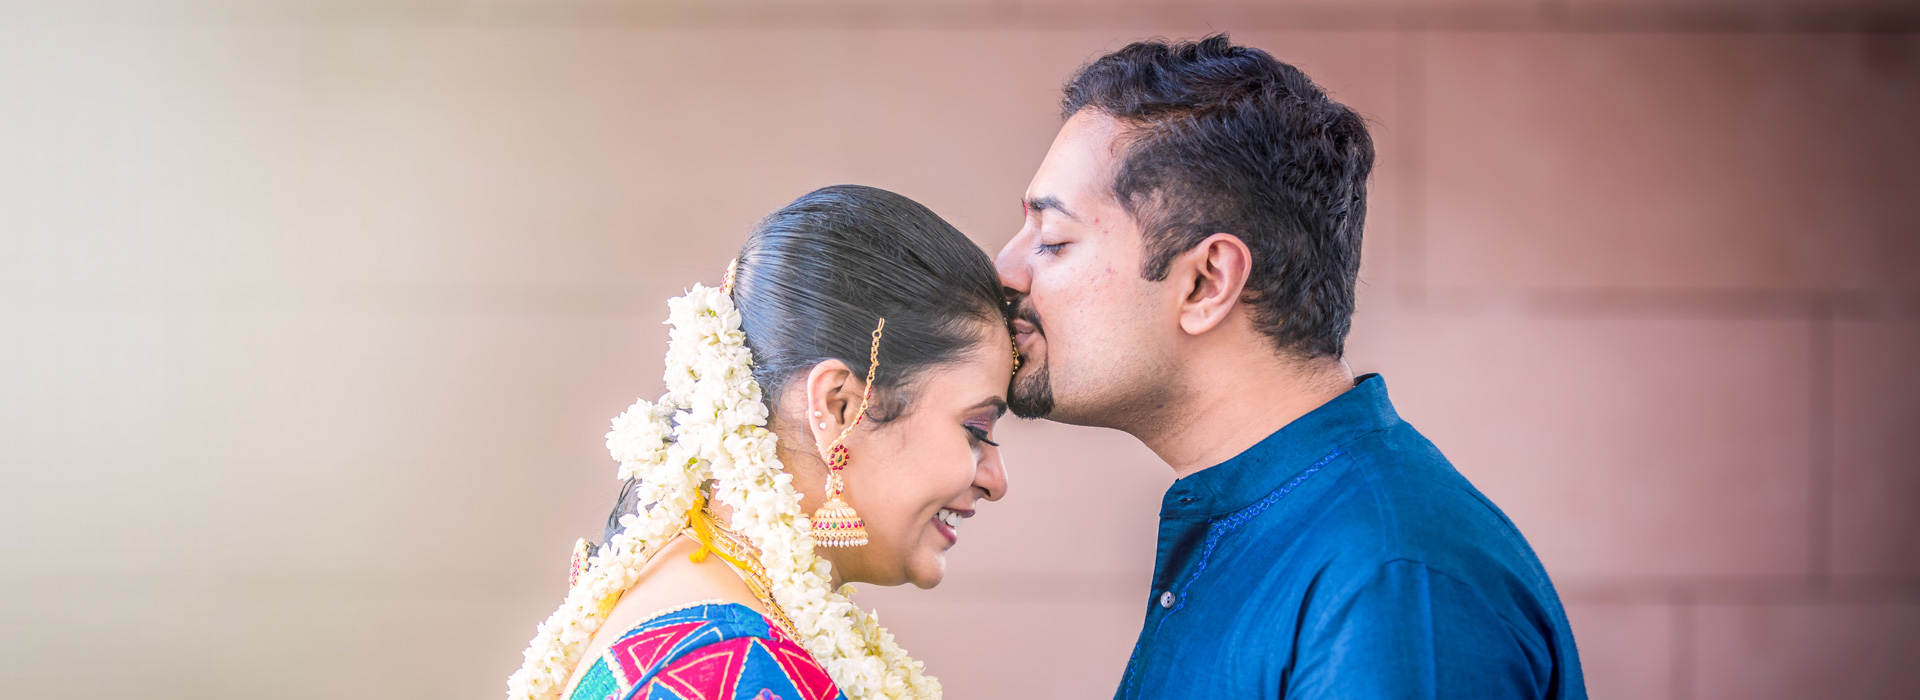 TV Anchor Vijaya & Bhanu Wedding Photos